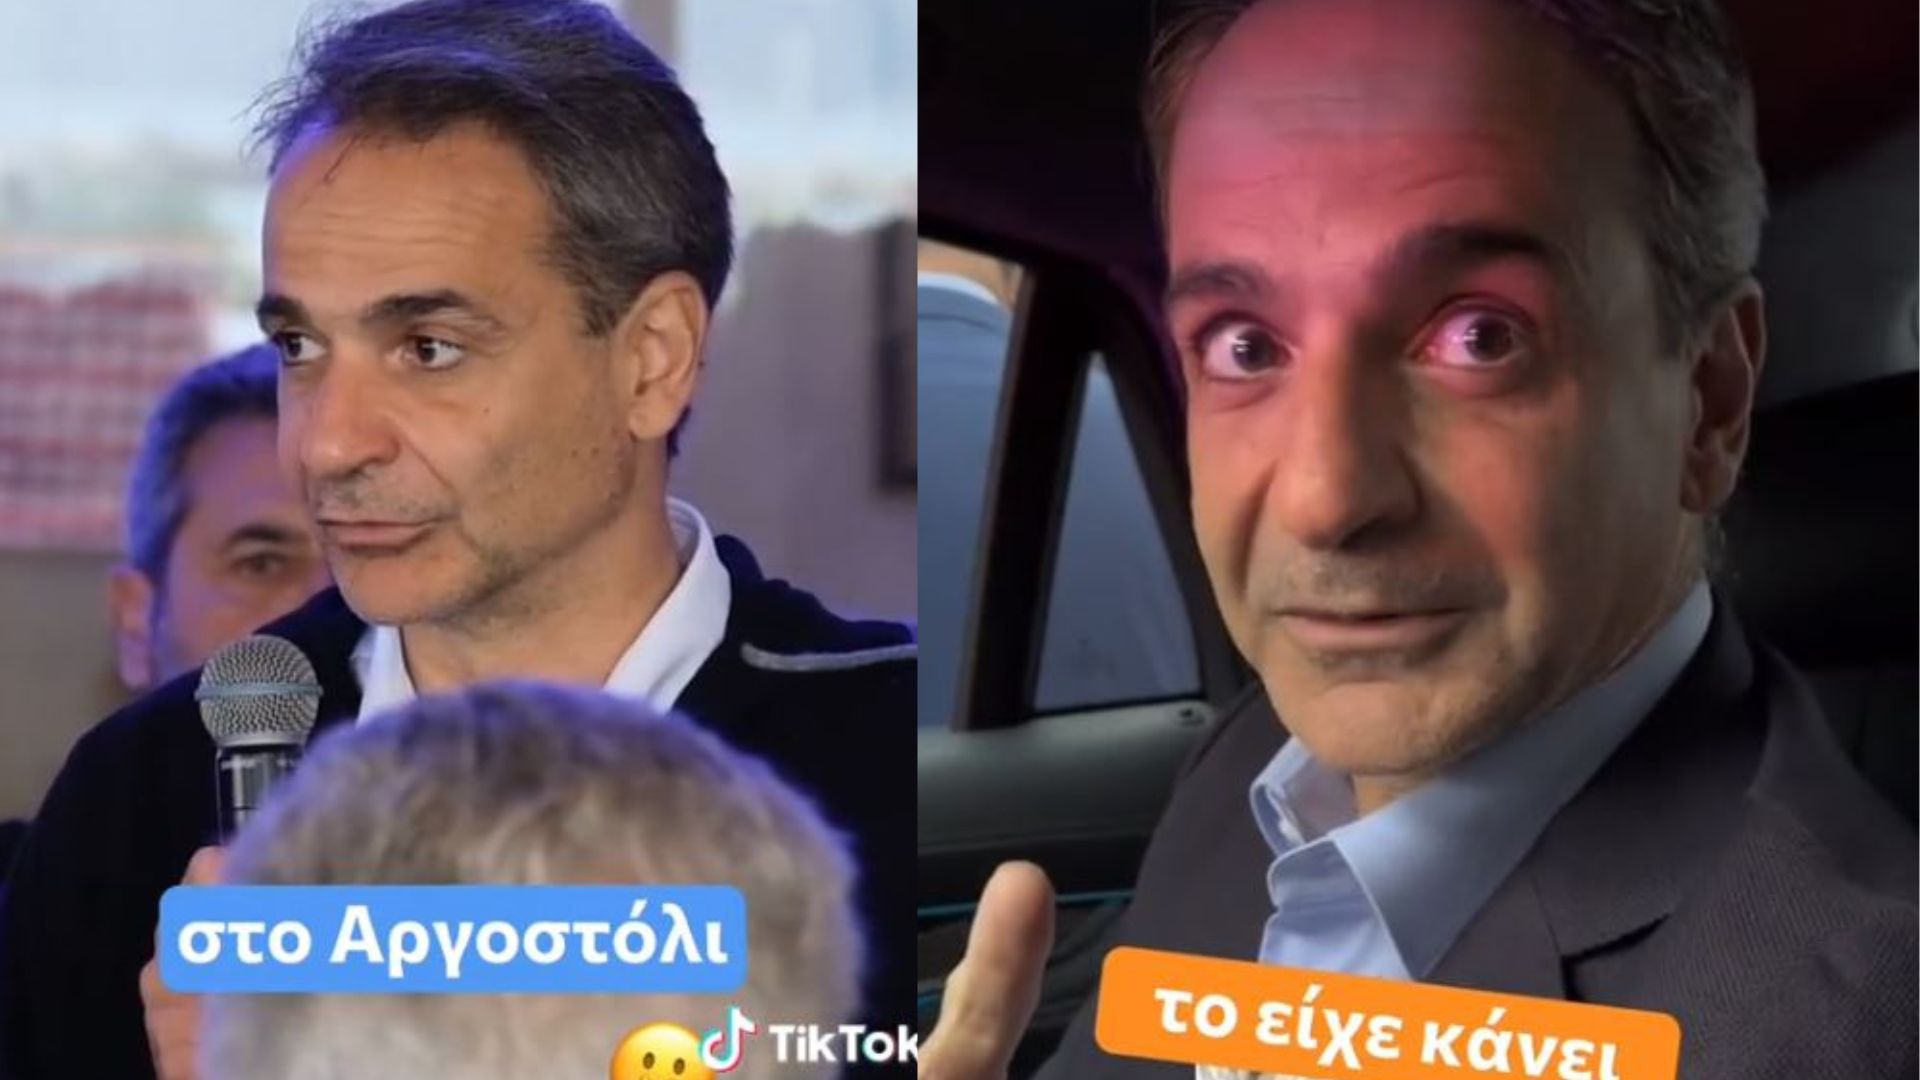 Κυριάκος Μητσοτάκης: Νέο βίντεο από το baskstage της προεκλογικής εκστρατείας – Το λάθος που θύμισε ιστορικό σαρδάμ